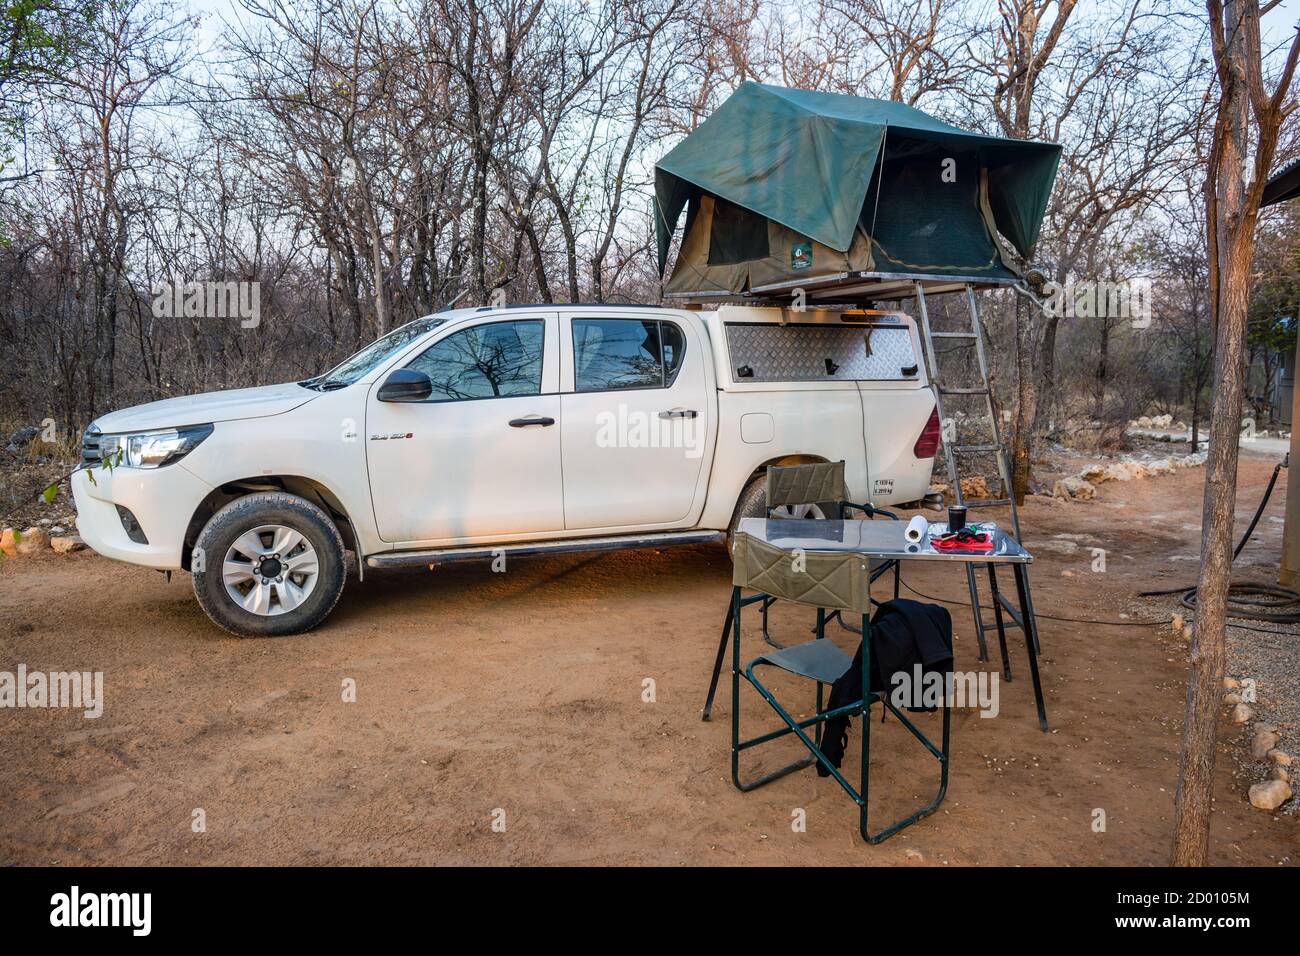 Camping, Dachzelt 4x4 Auto, Onguma Campingplatz, Namibia, Afrika  Stockfotografie - Alamy